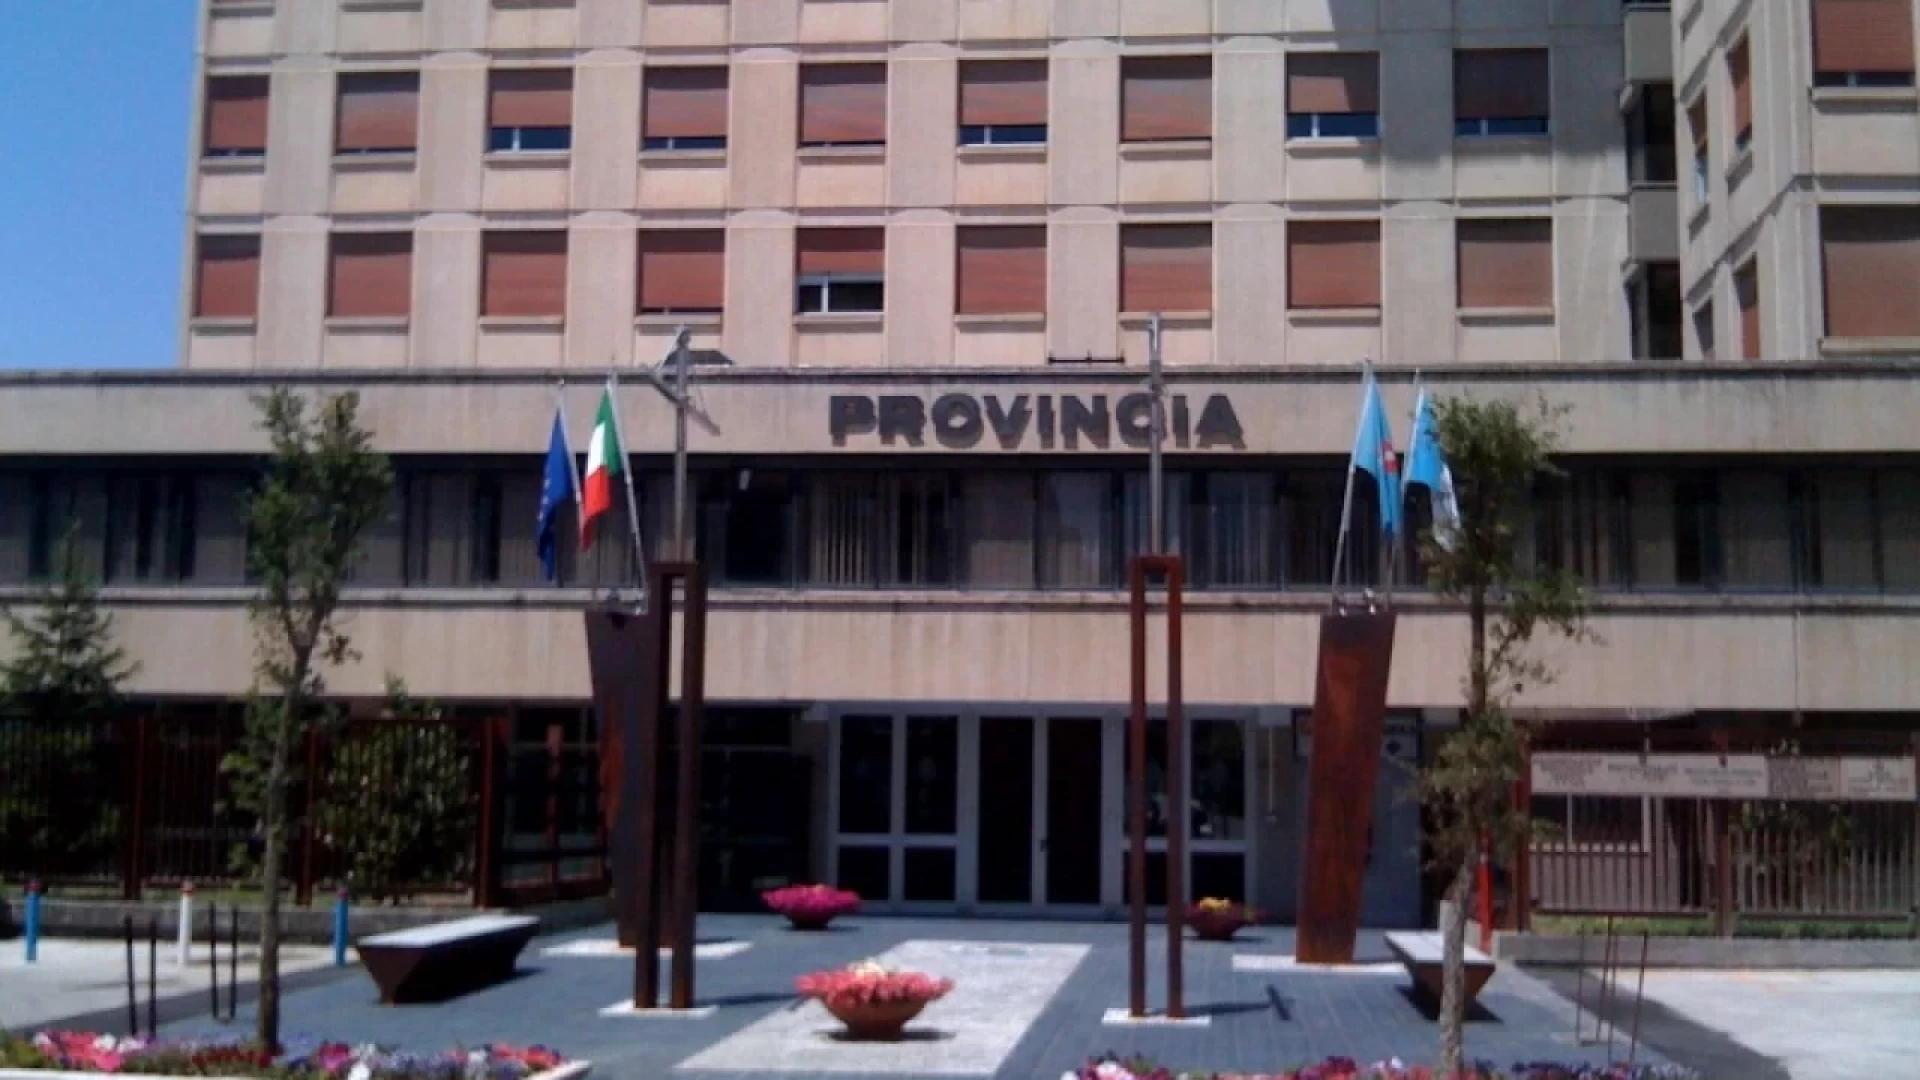 Elezioni provinciali, ad Isernia si vota il 19 novembre. Ricci firma il decreto.